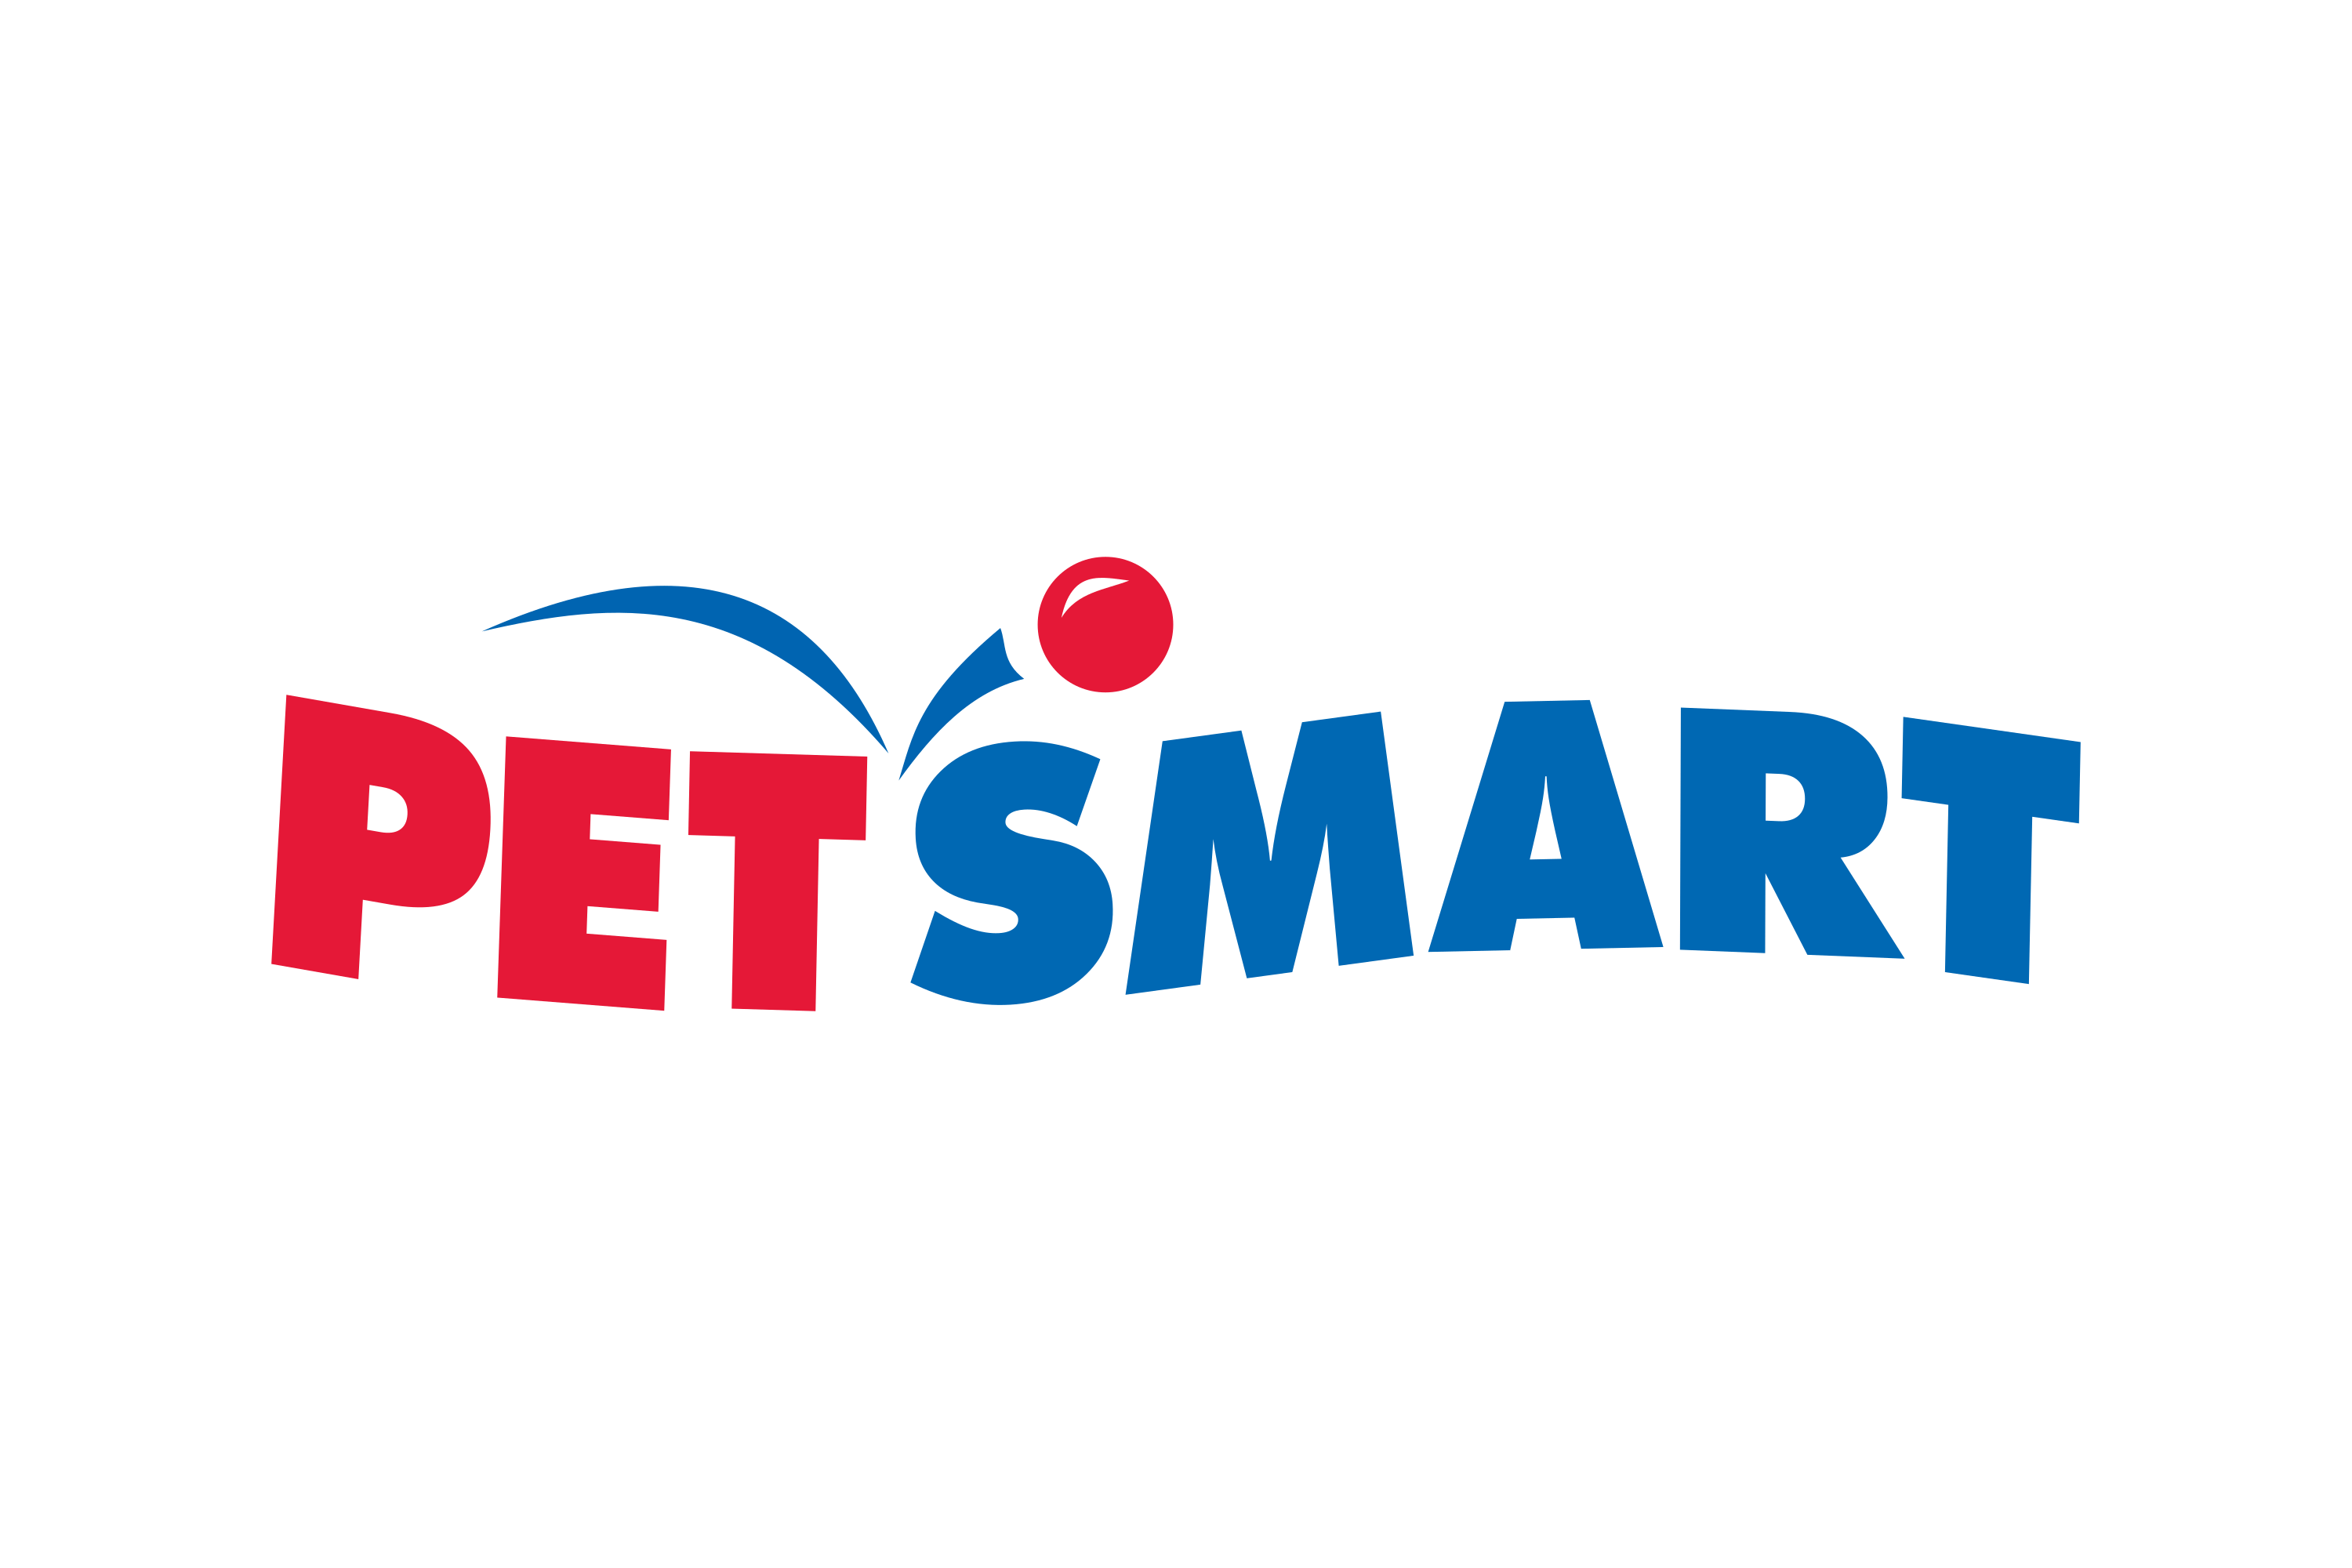 Download PetSmart Logo in SVG Vector or PNG File Format - Logo.wine